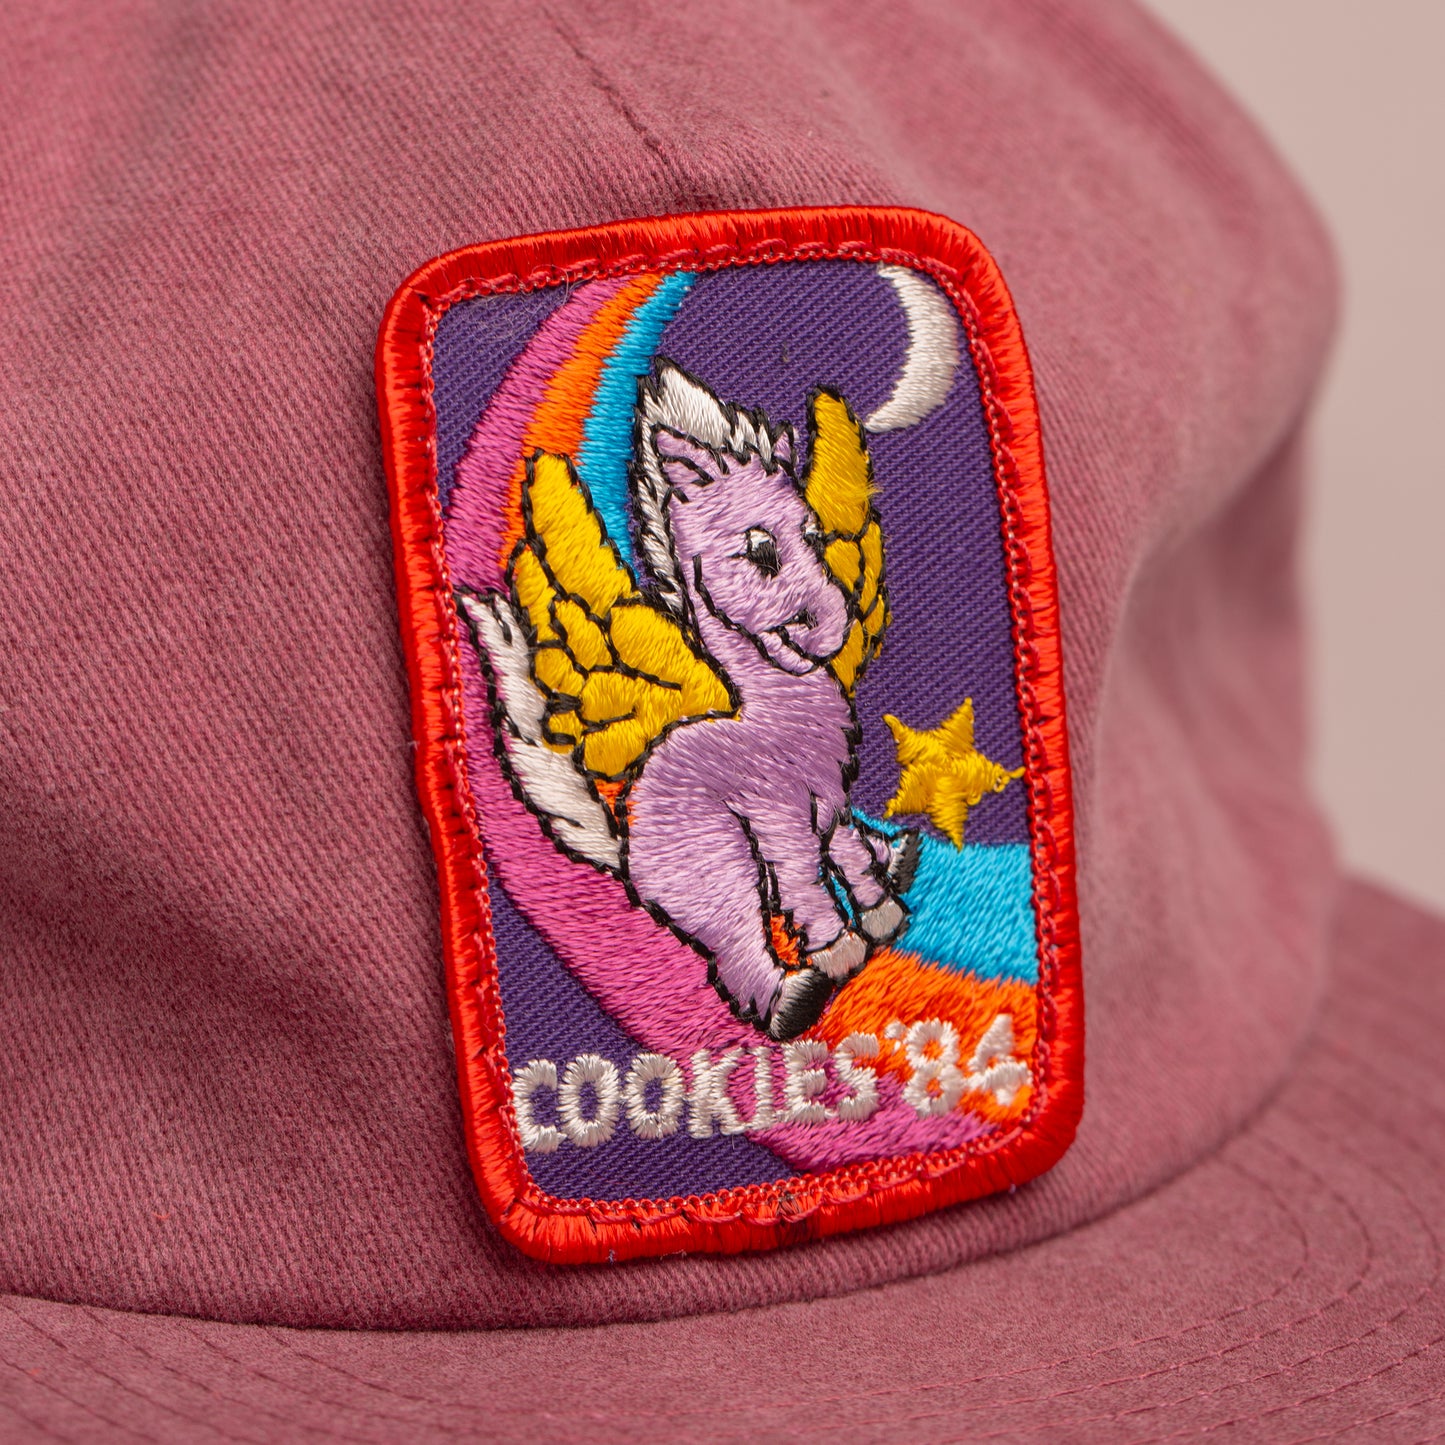 Cookies '84 Field Trip Cap